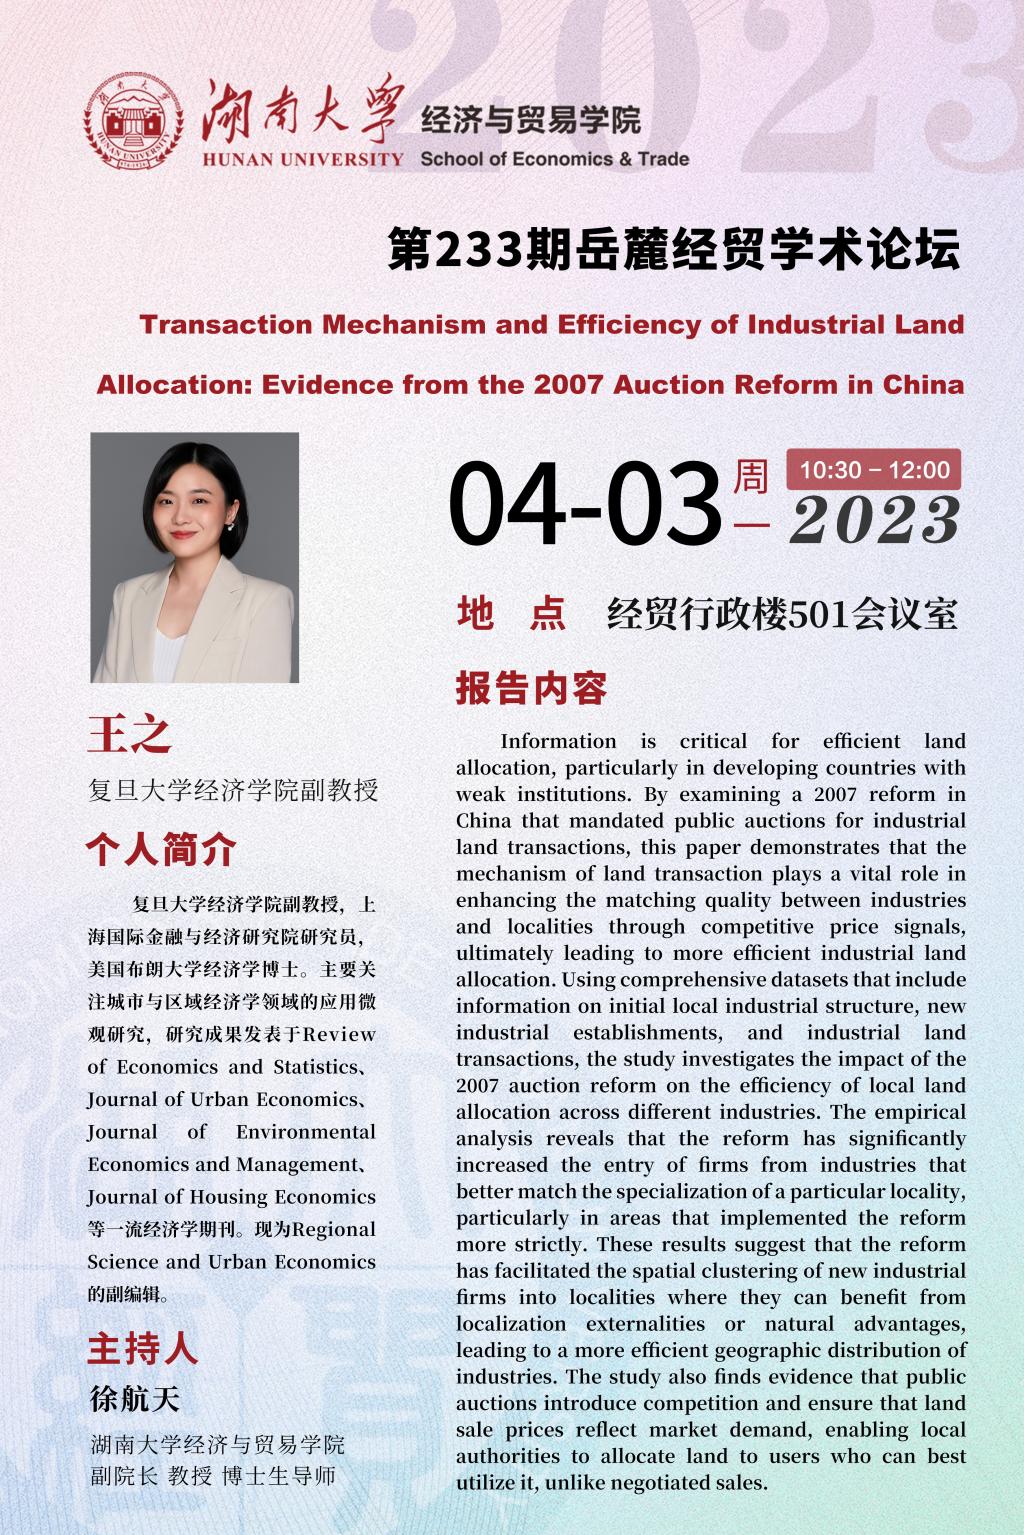 王之：Transaction Mechanism and Efficiency of Industrial Land 